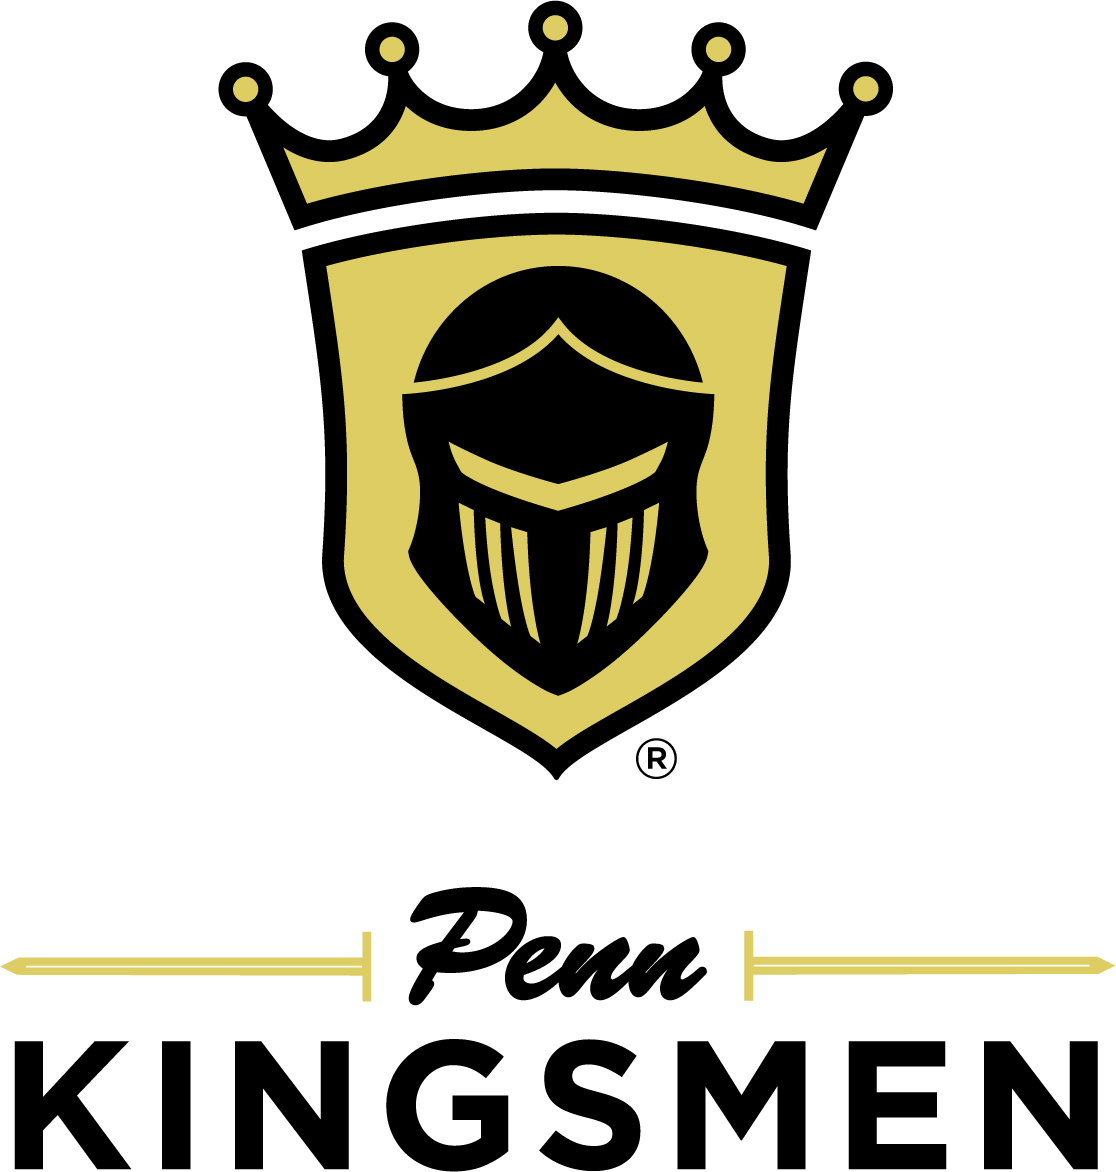 Penn Kingsmen athletic logo